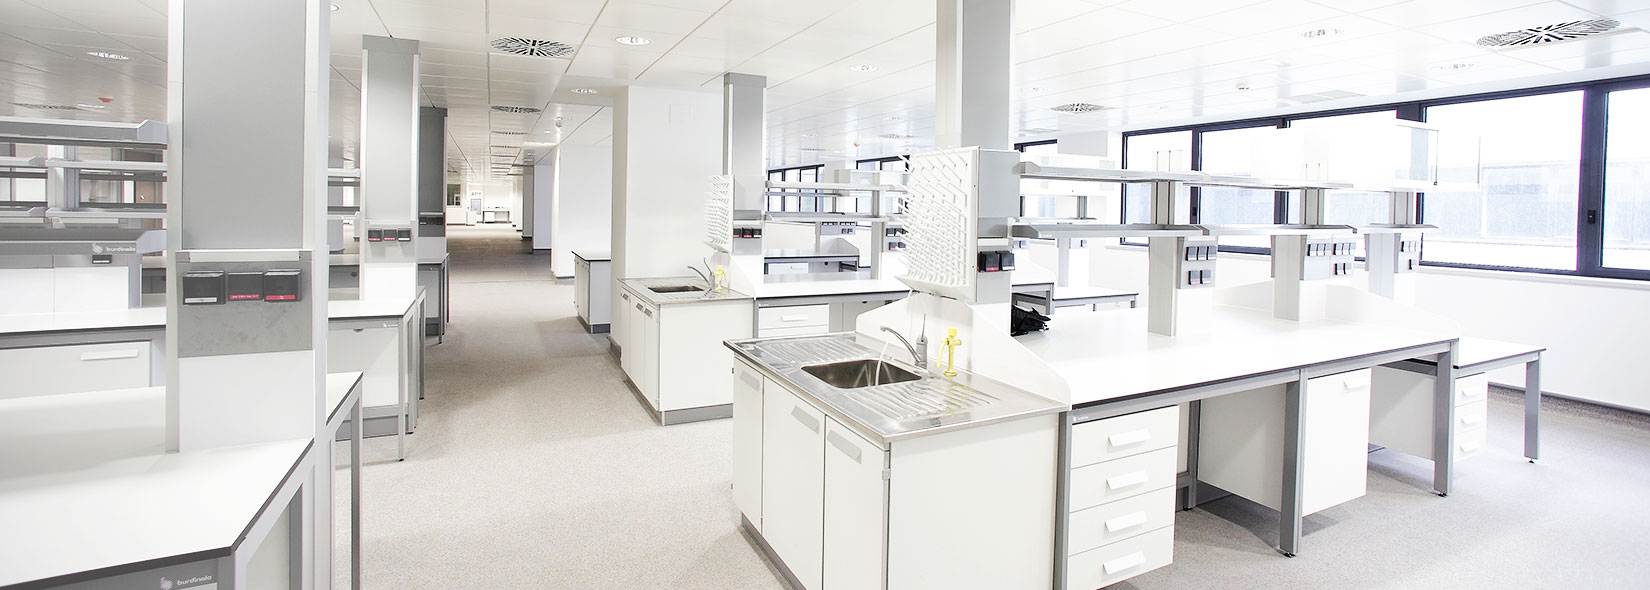 Image d’un laboratoire composé par le mobilier pour laboratoire de Burdinola.